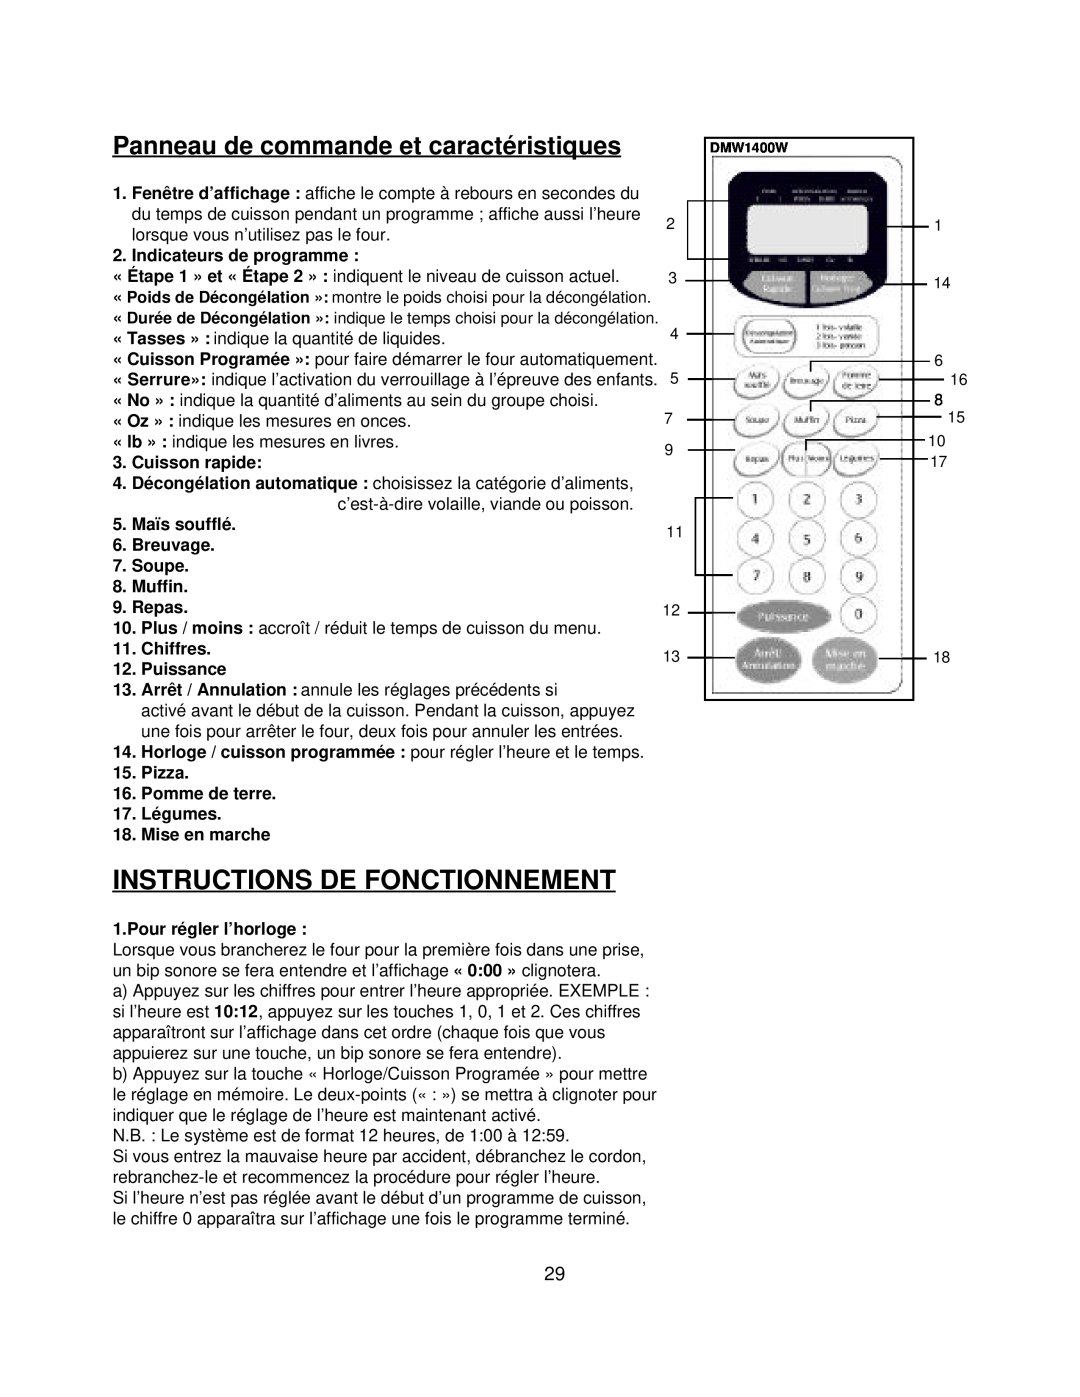 Danby DMW1400W manual Instructions De Fonctionnement, Panneau de commande et caractéristiques, Indicateurs de programme 